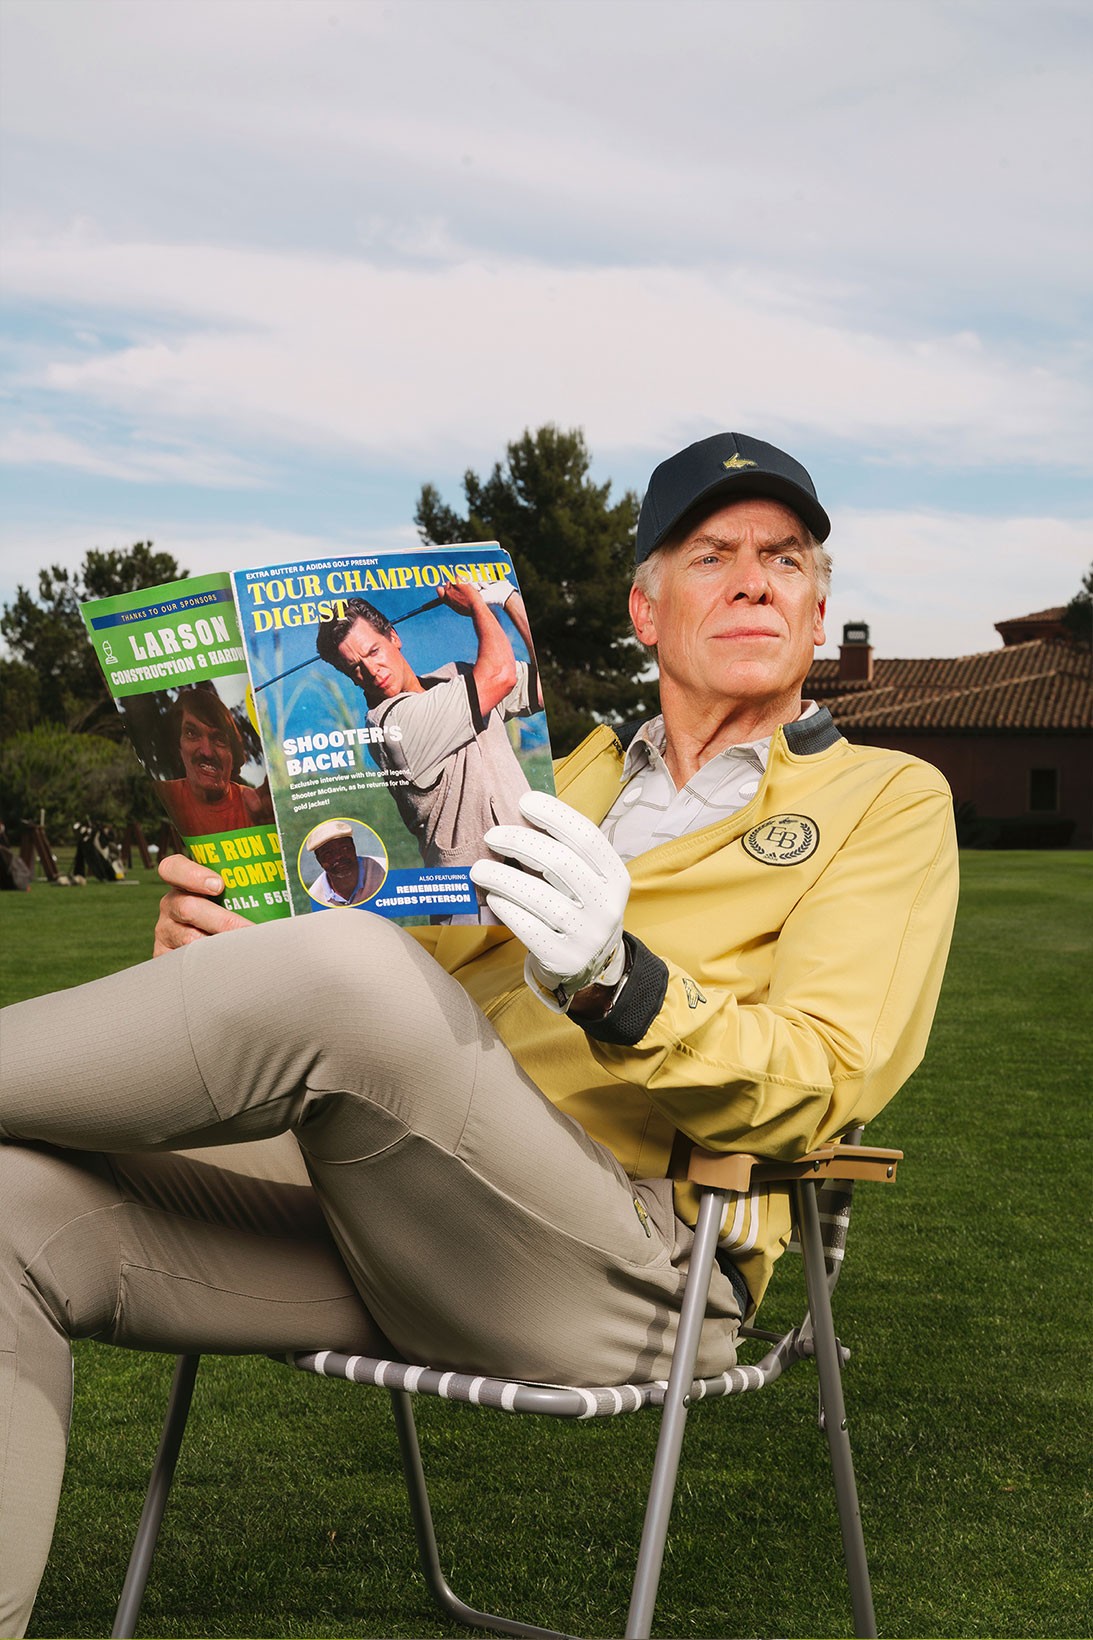 adidas выпустил гольф-коллекцию в стиле комедии «Счастливчик Гилмор» (фото 1)